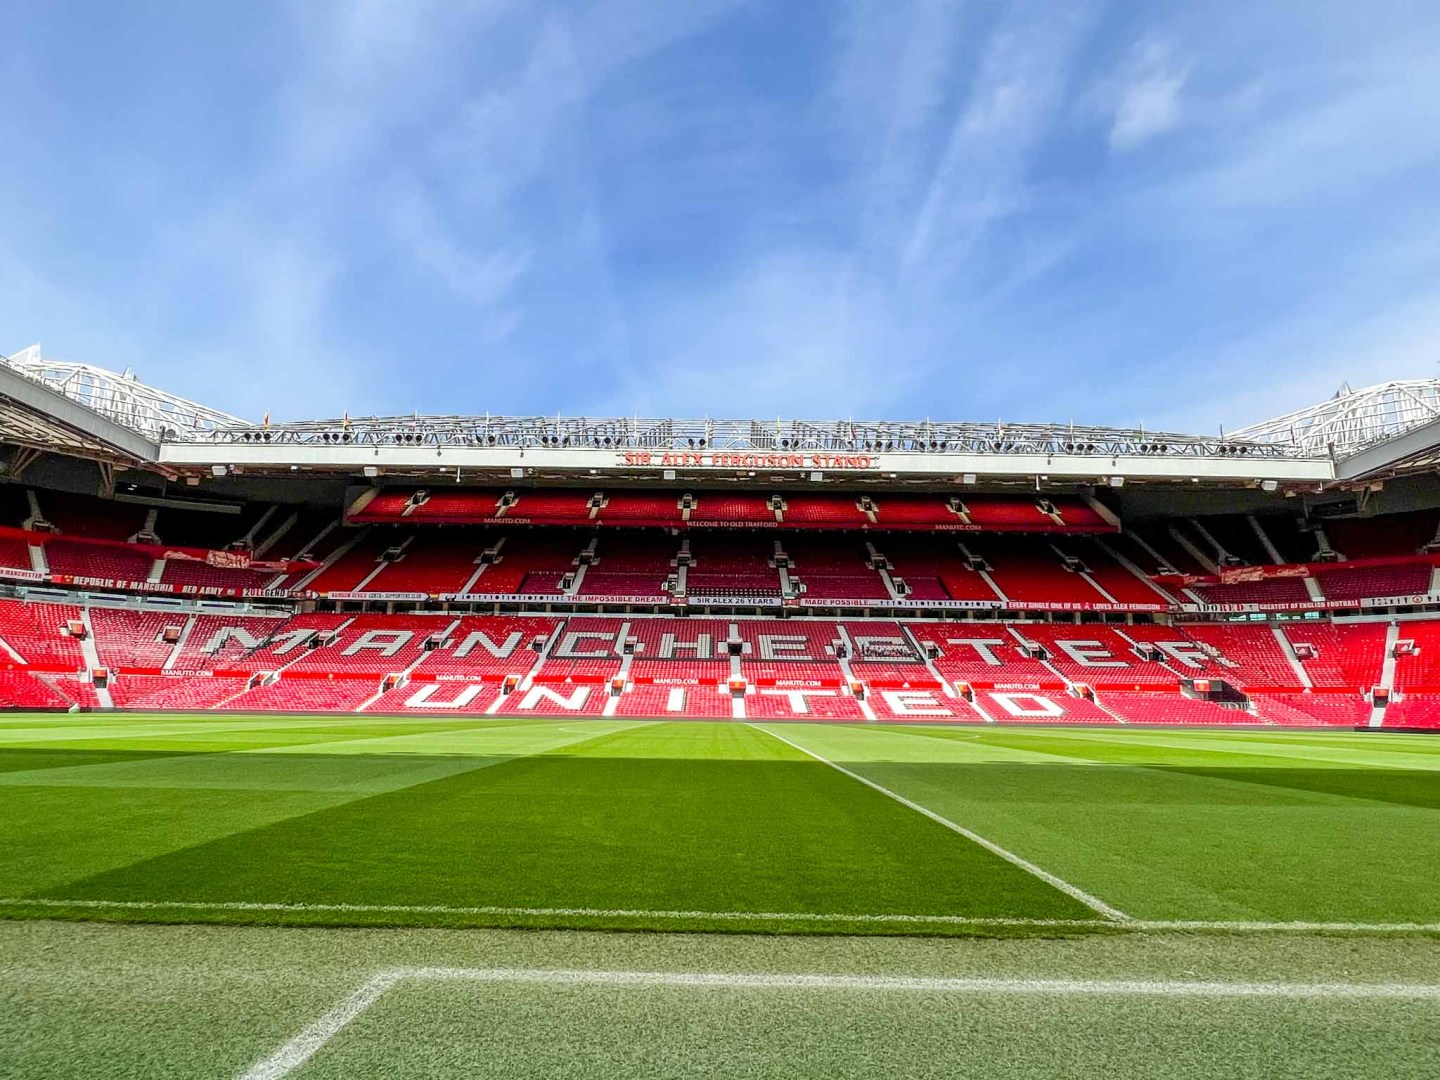 Visita al estadio del Manchester United, vista del campo vacío